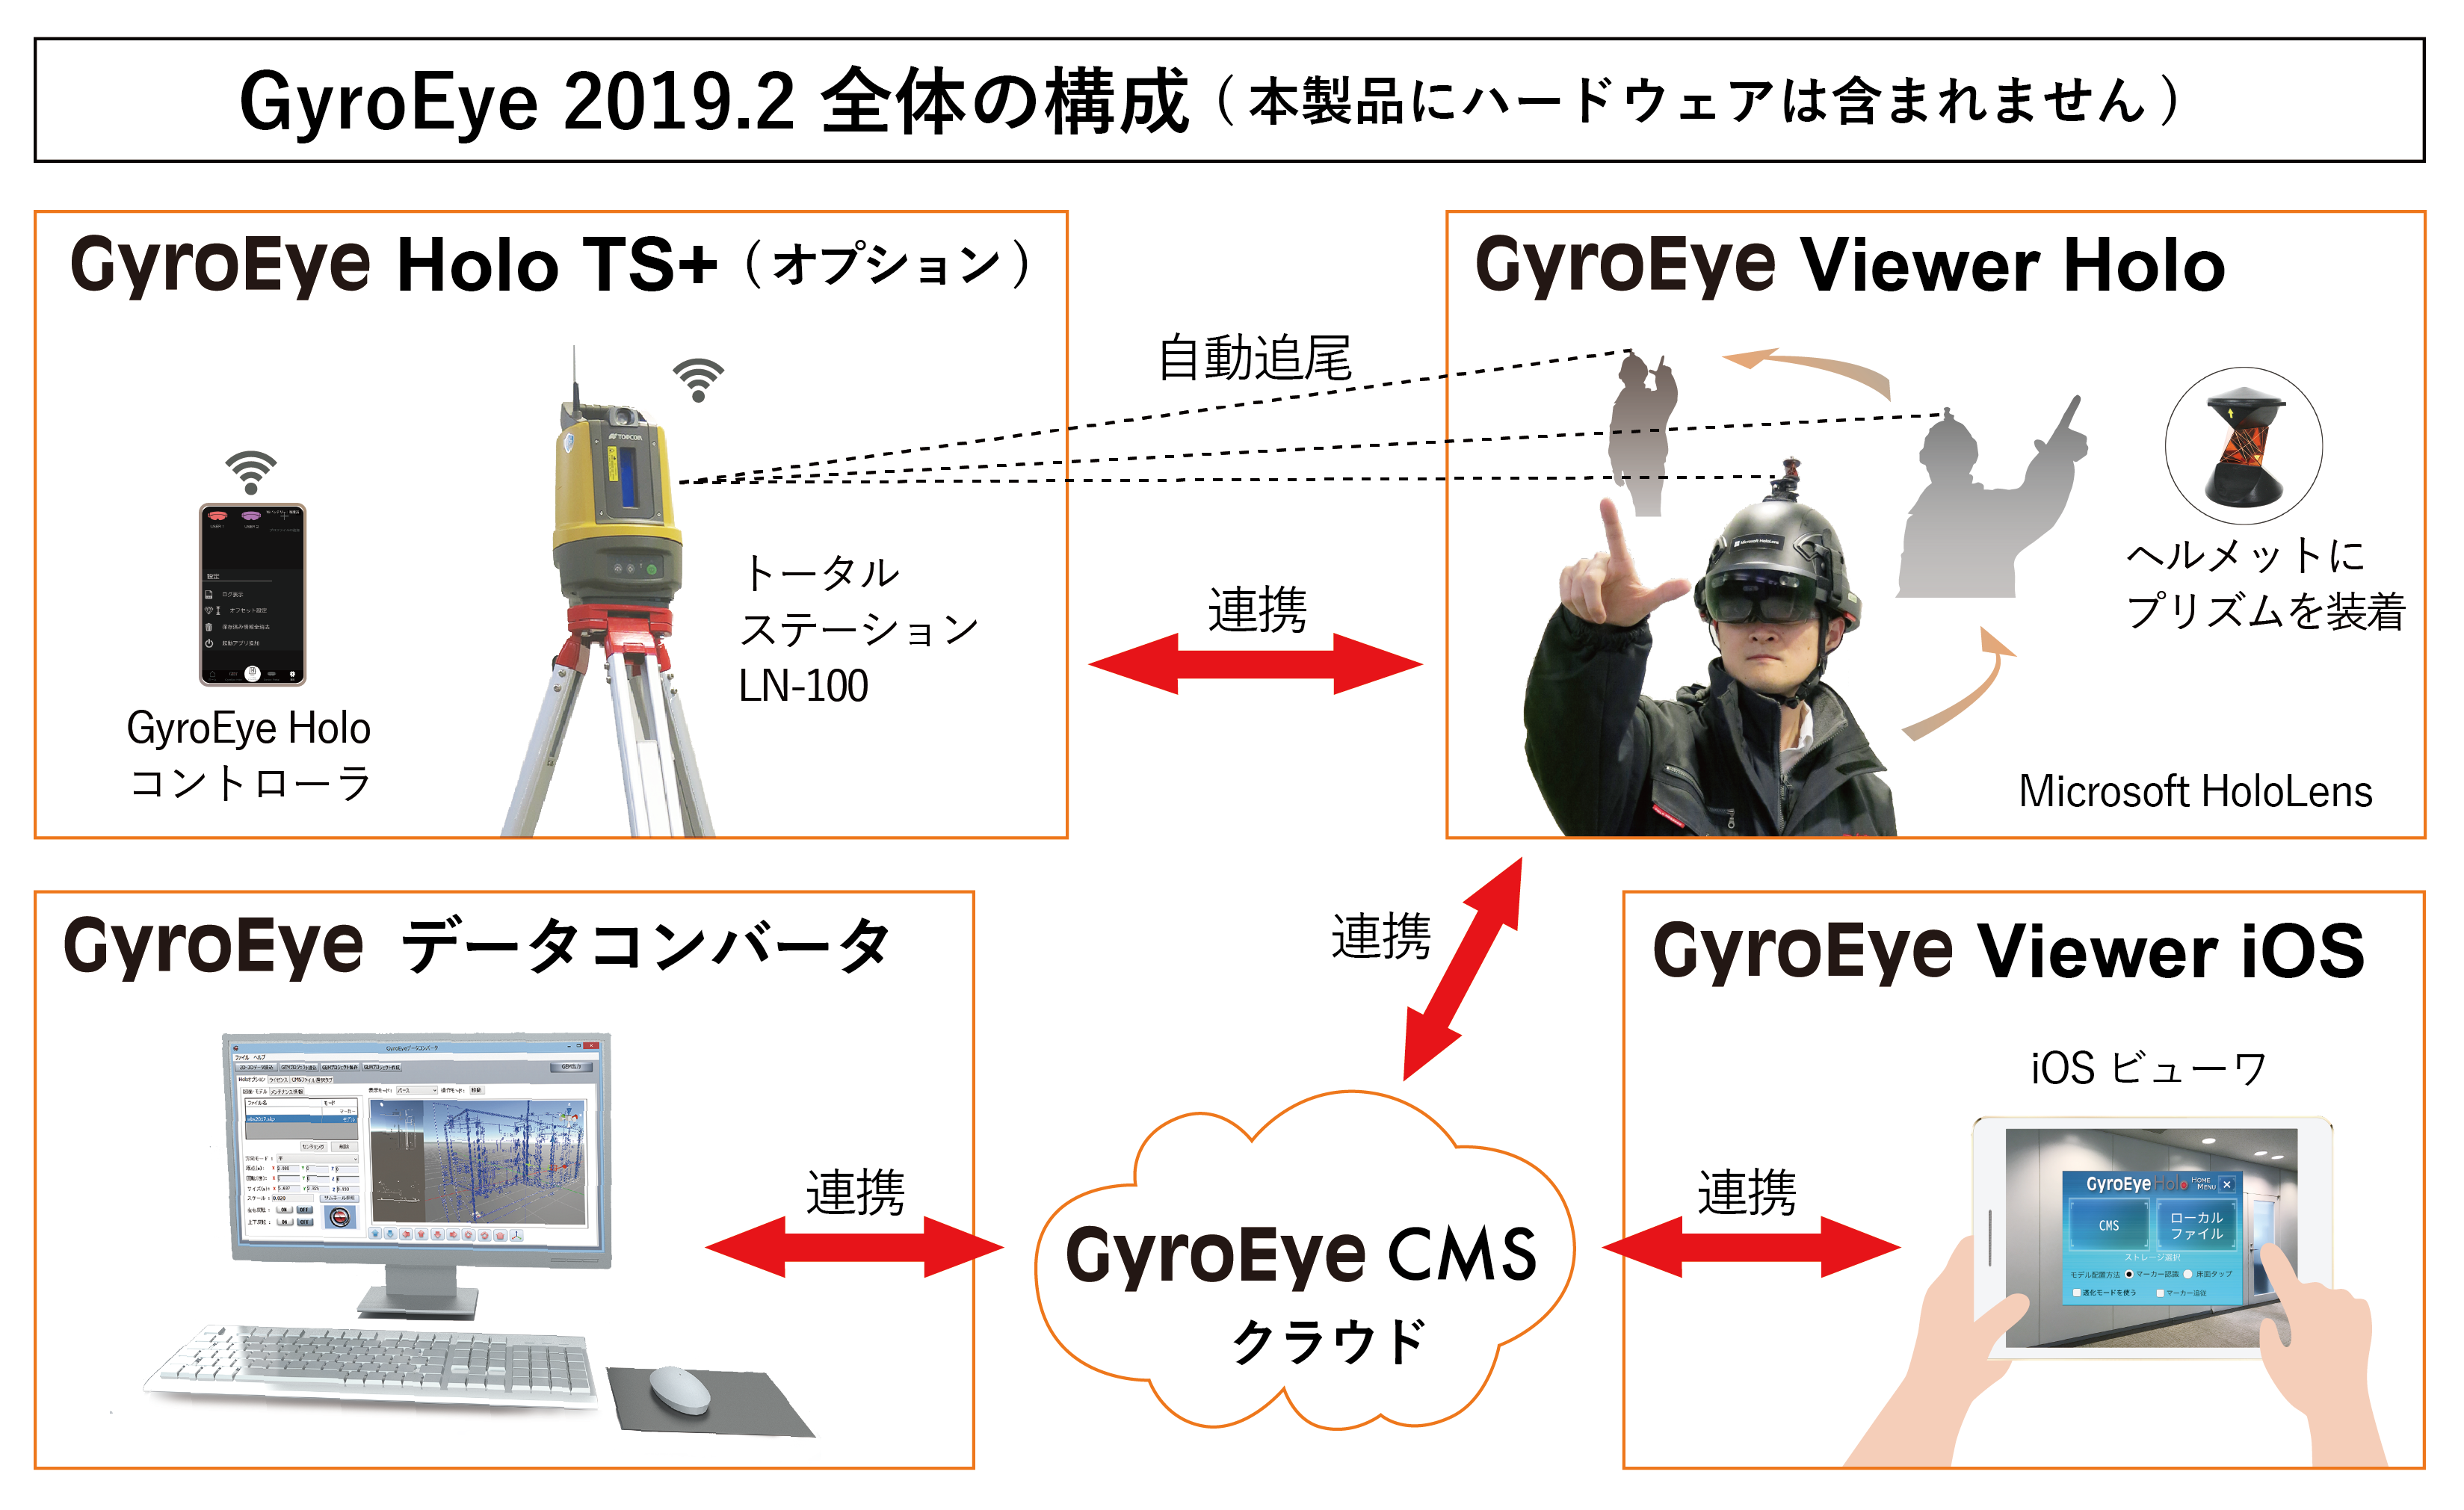 Mixed Reality（MR：複合現実）システムの最新版「GyroEye 2019.2」のリリースを発表